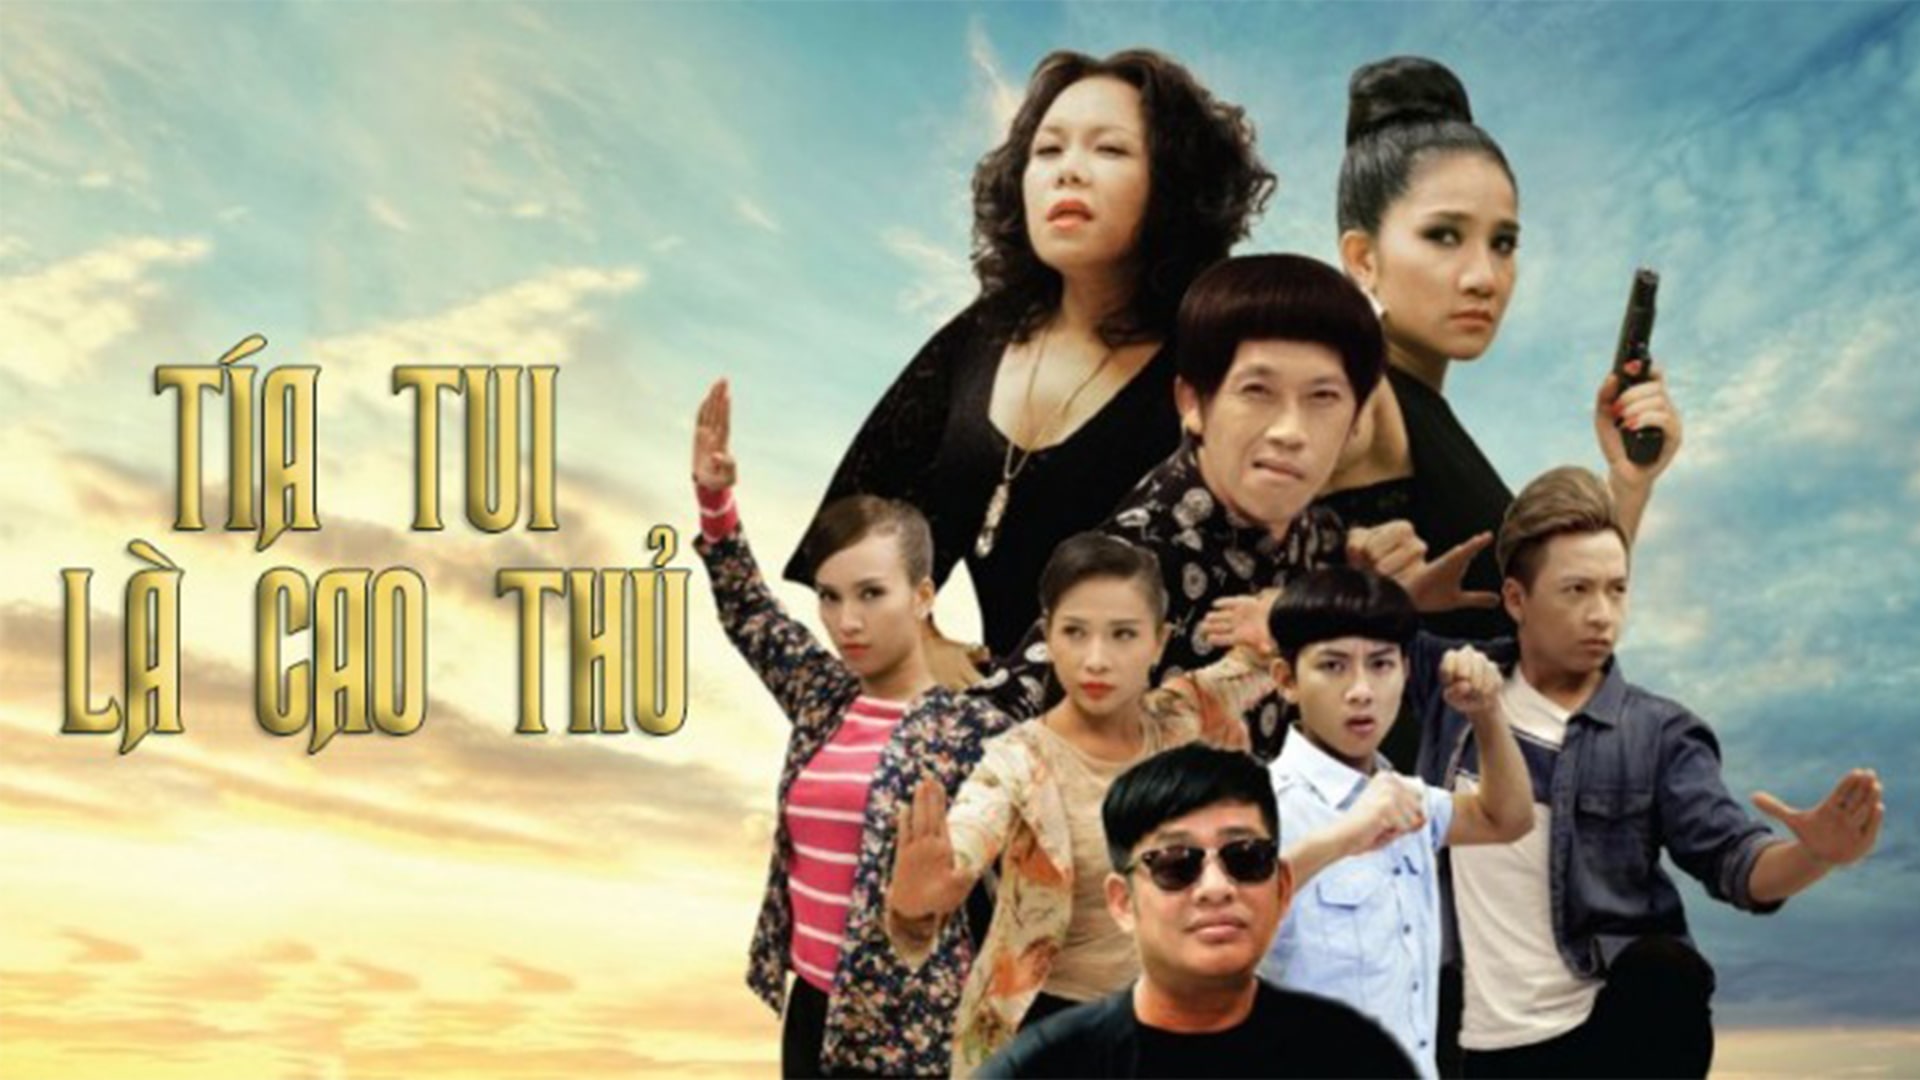 Phim ngắn Tía Tui Là Cao Thủ 2013